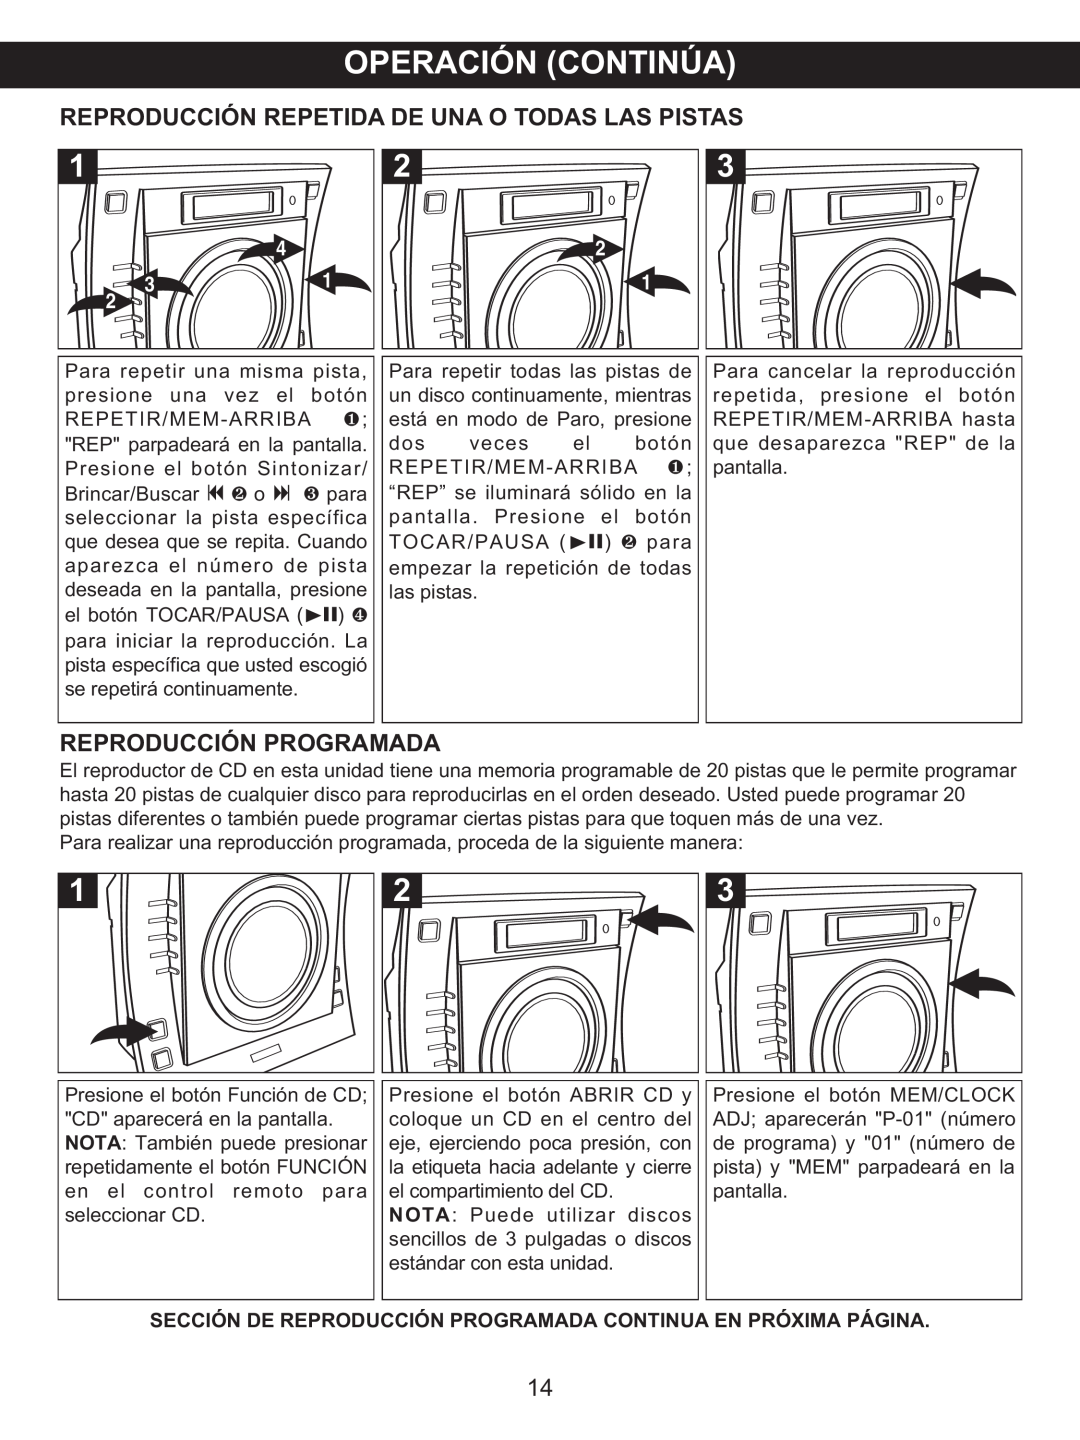 Memorex MX4137 manual Reproducción Repetida De Una O Todas Las Pistas, Reproducción Programada 